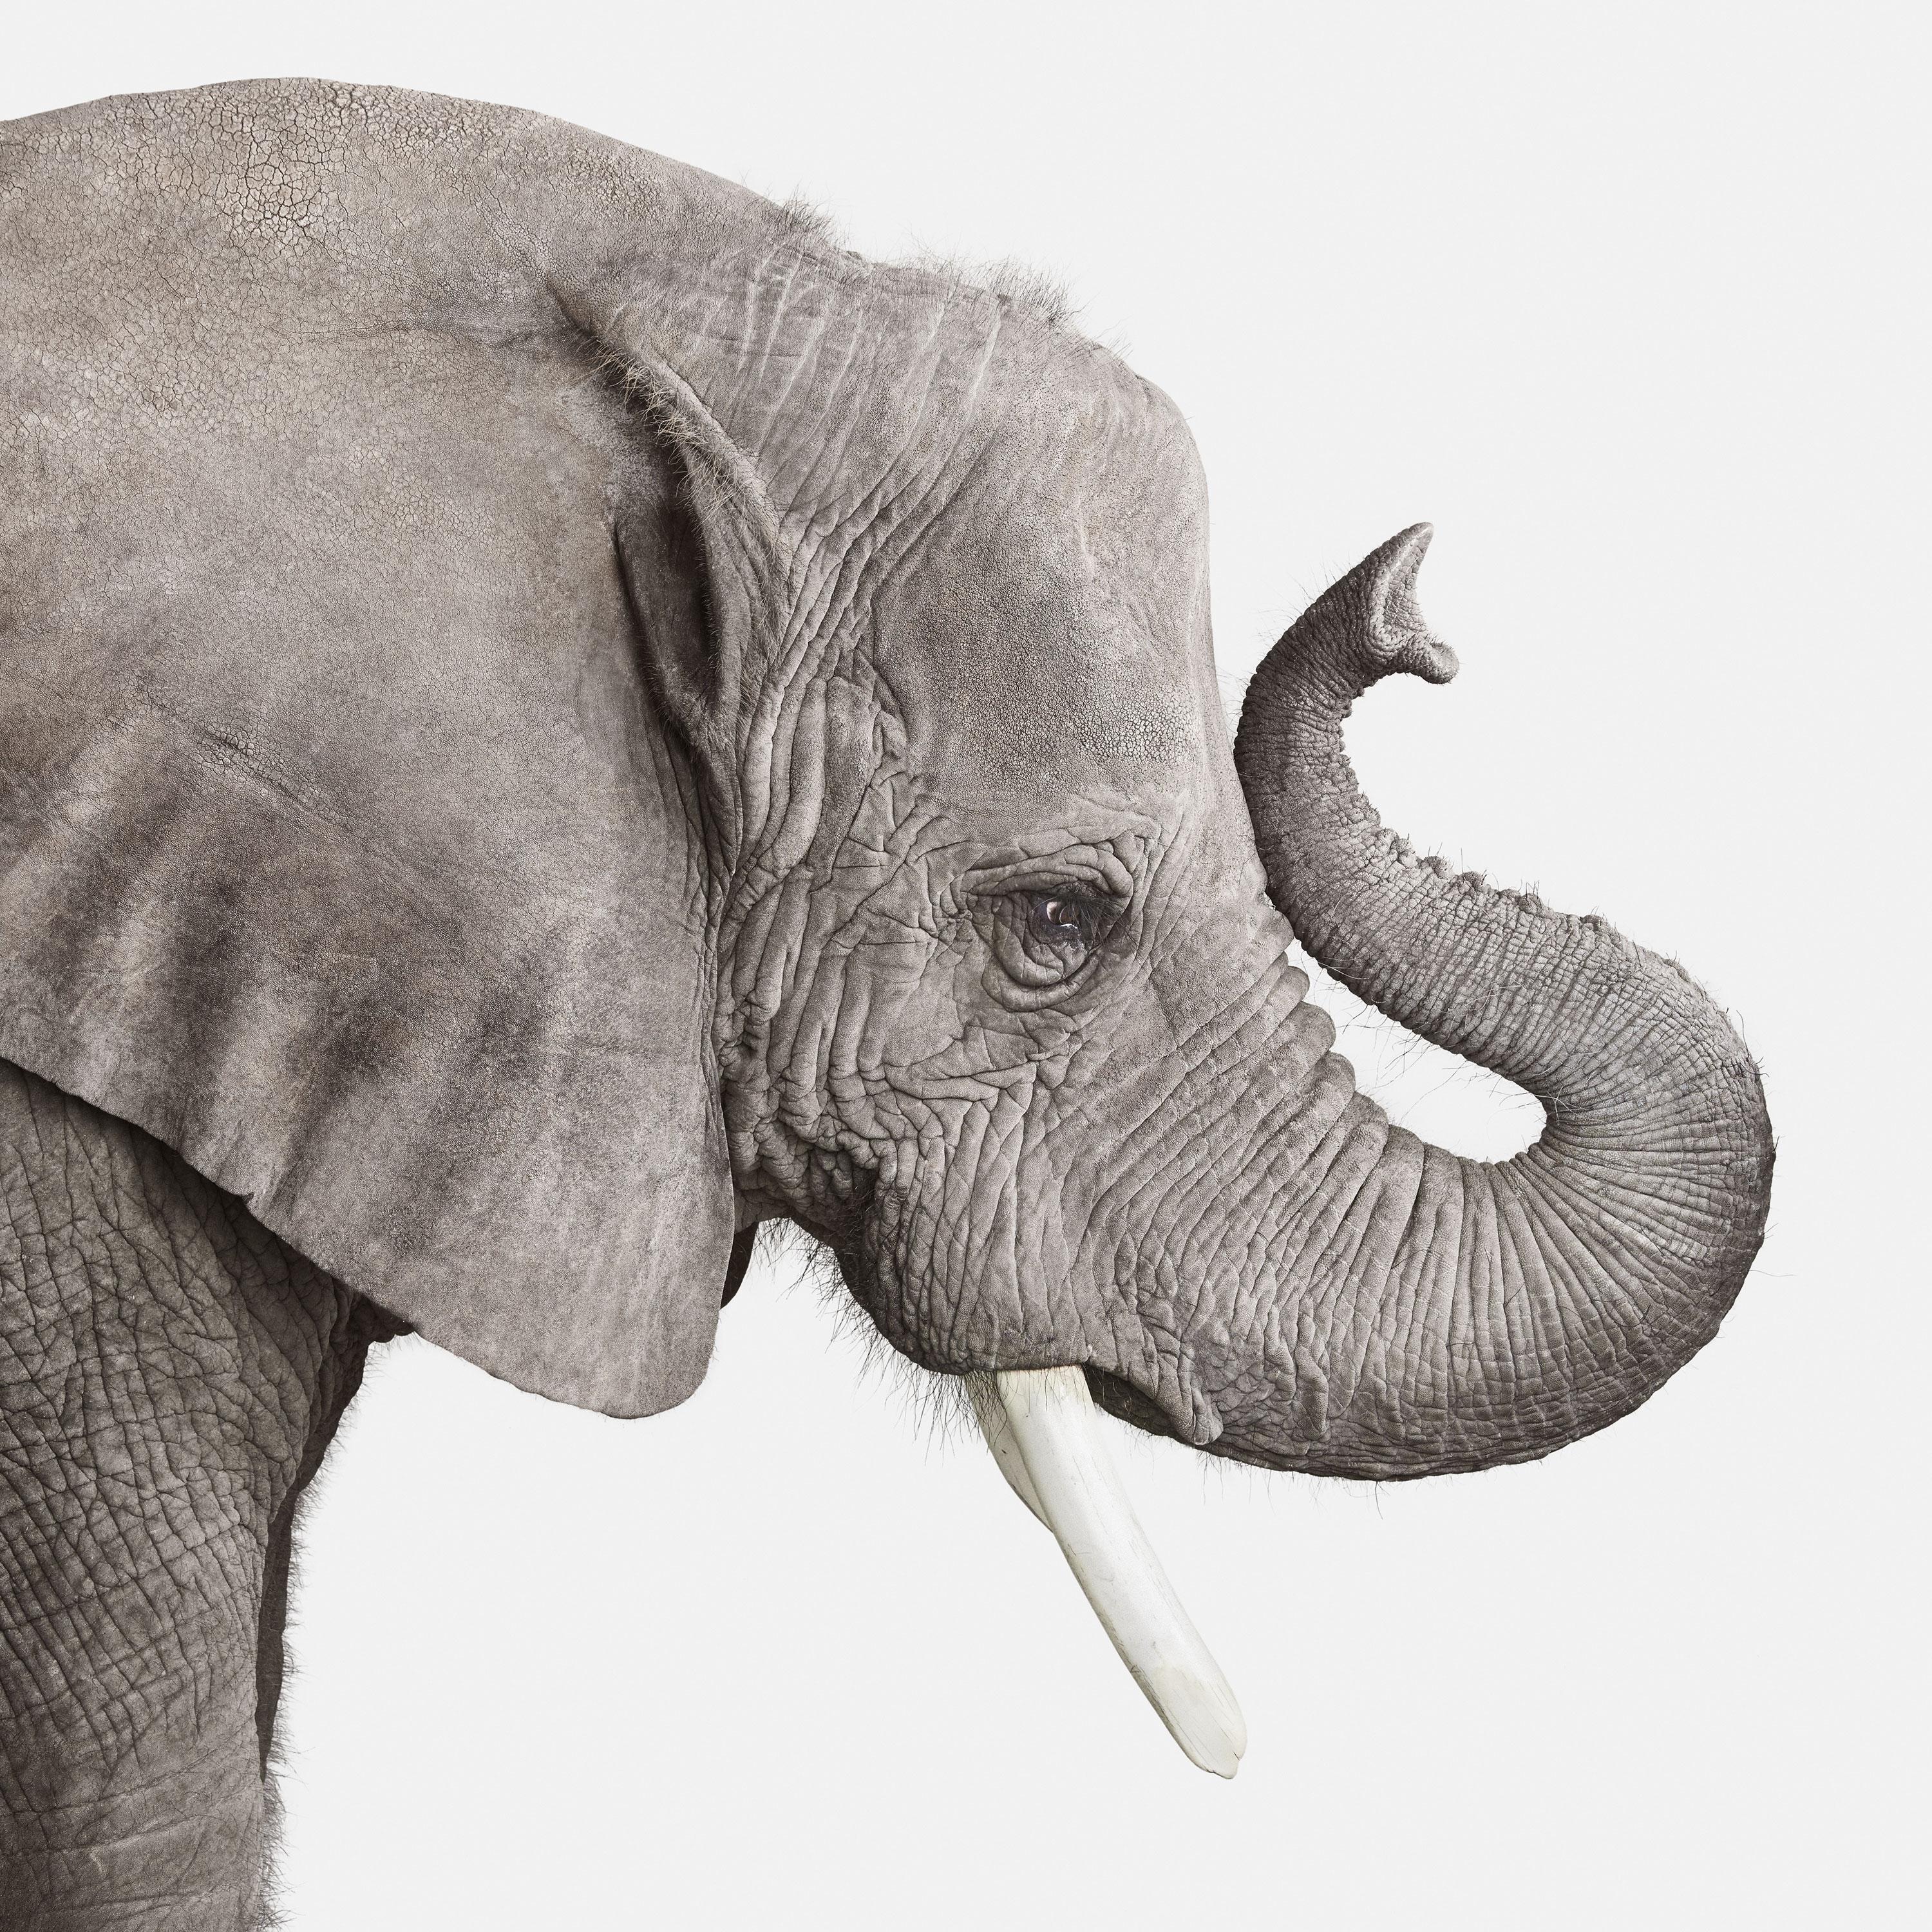 Randal Ford Animal Print - Elephant No. 2 (30" x 45")